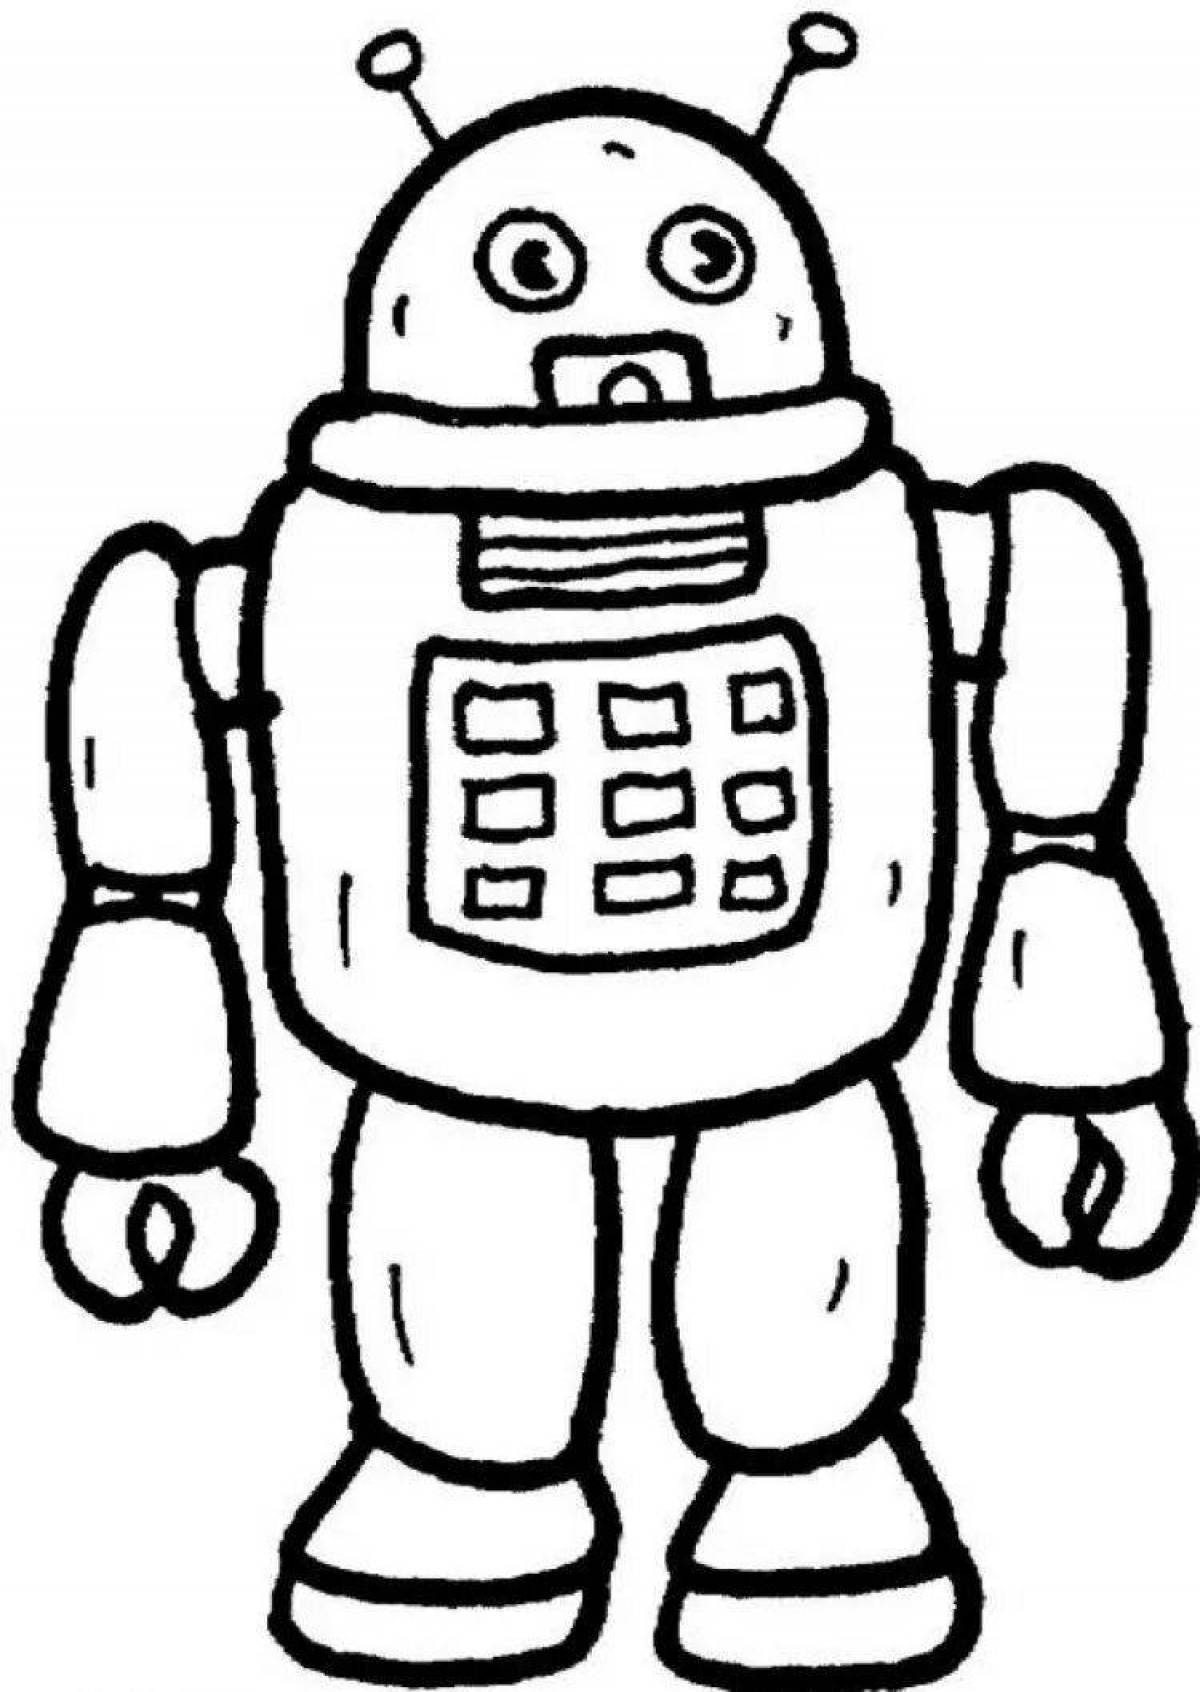 Раскраска робота 3. Раскраски. Роботы. Тобот раскраска для детей. Раскраски для мальчиков роботы. Робот раскраска для детей.